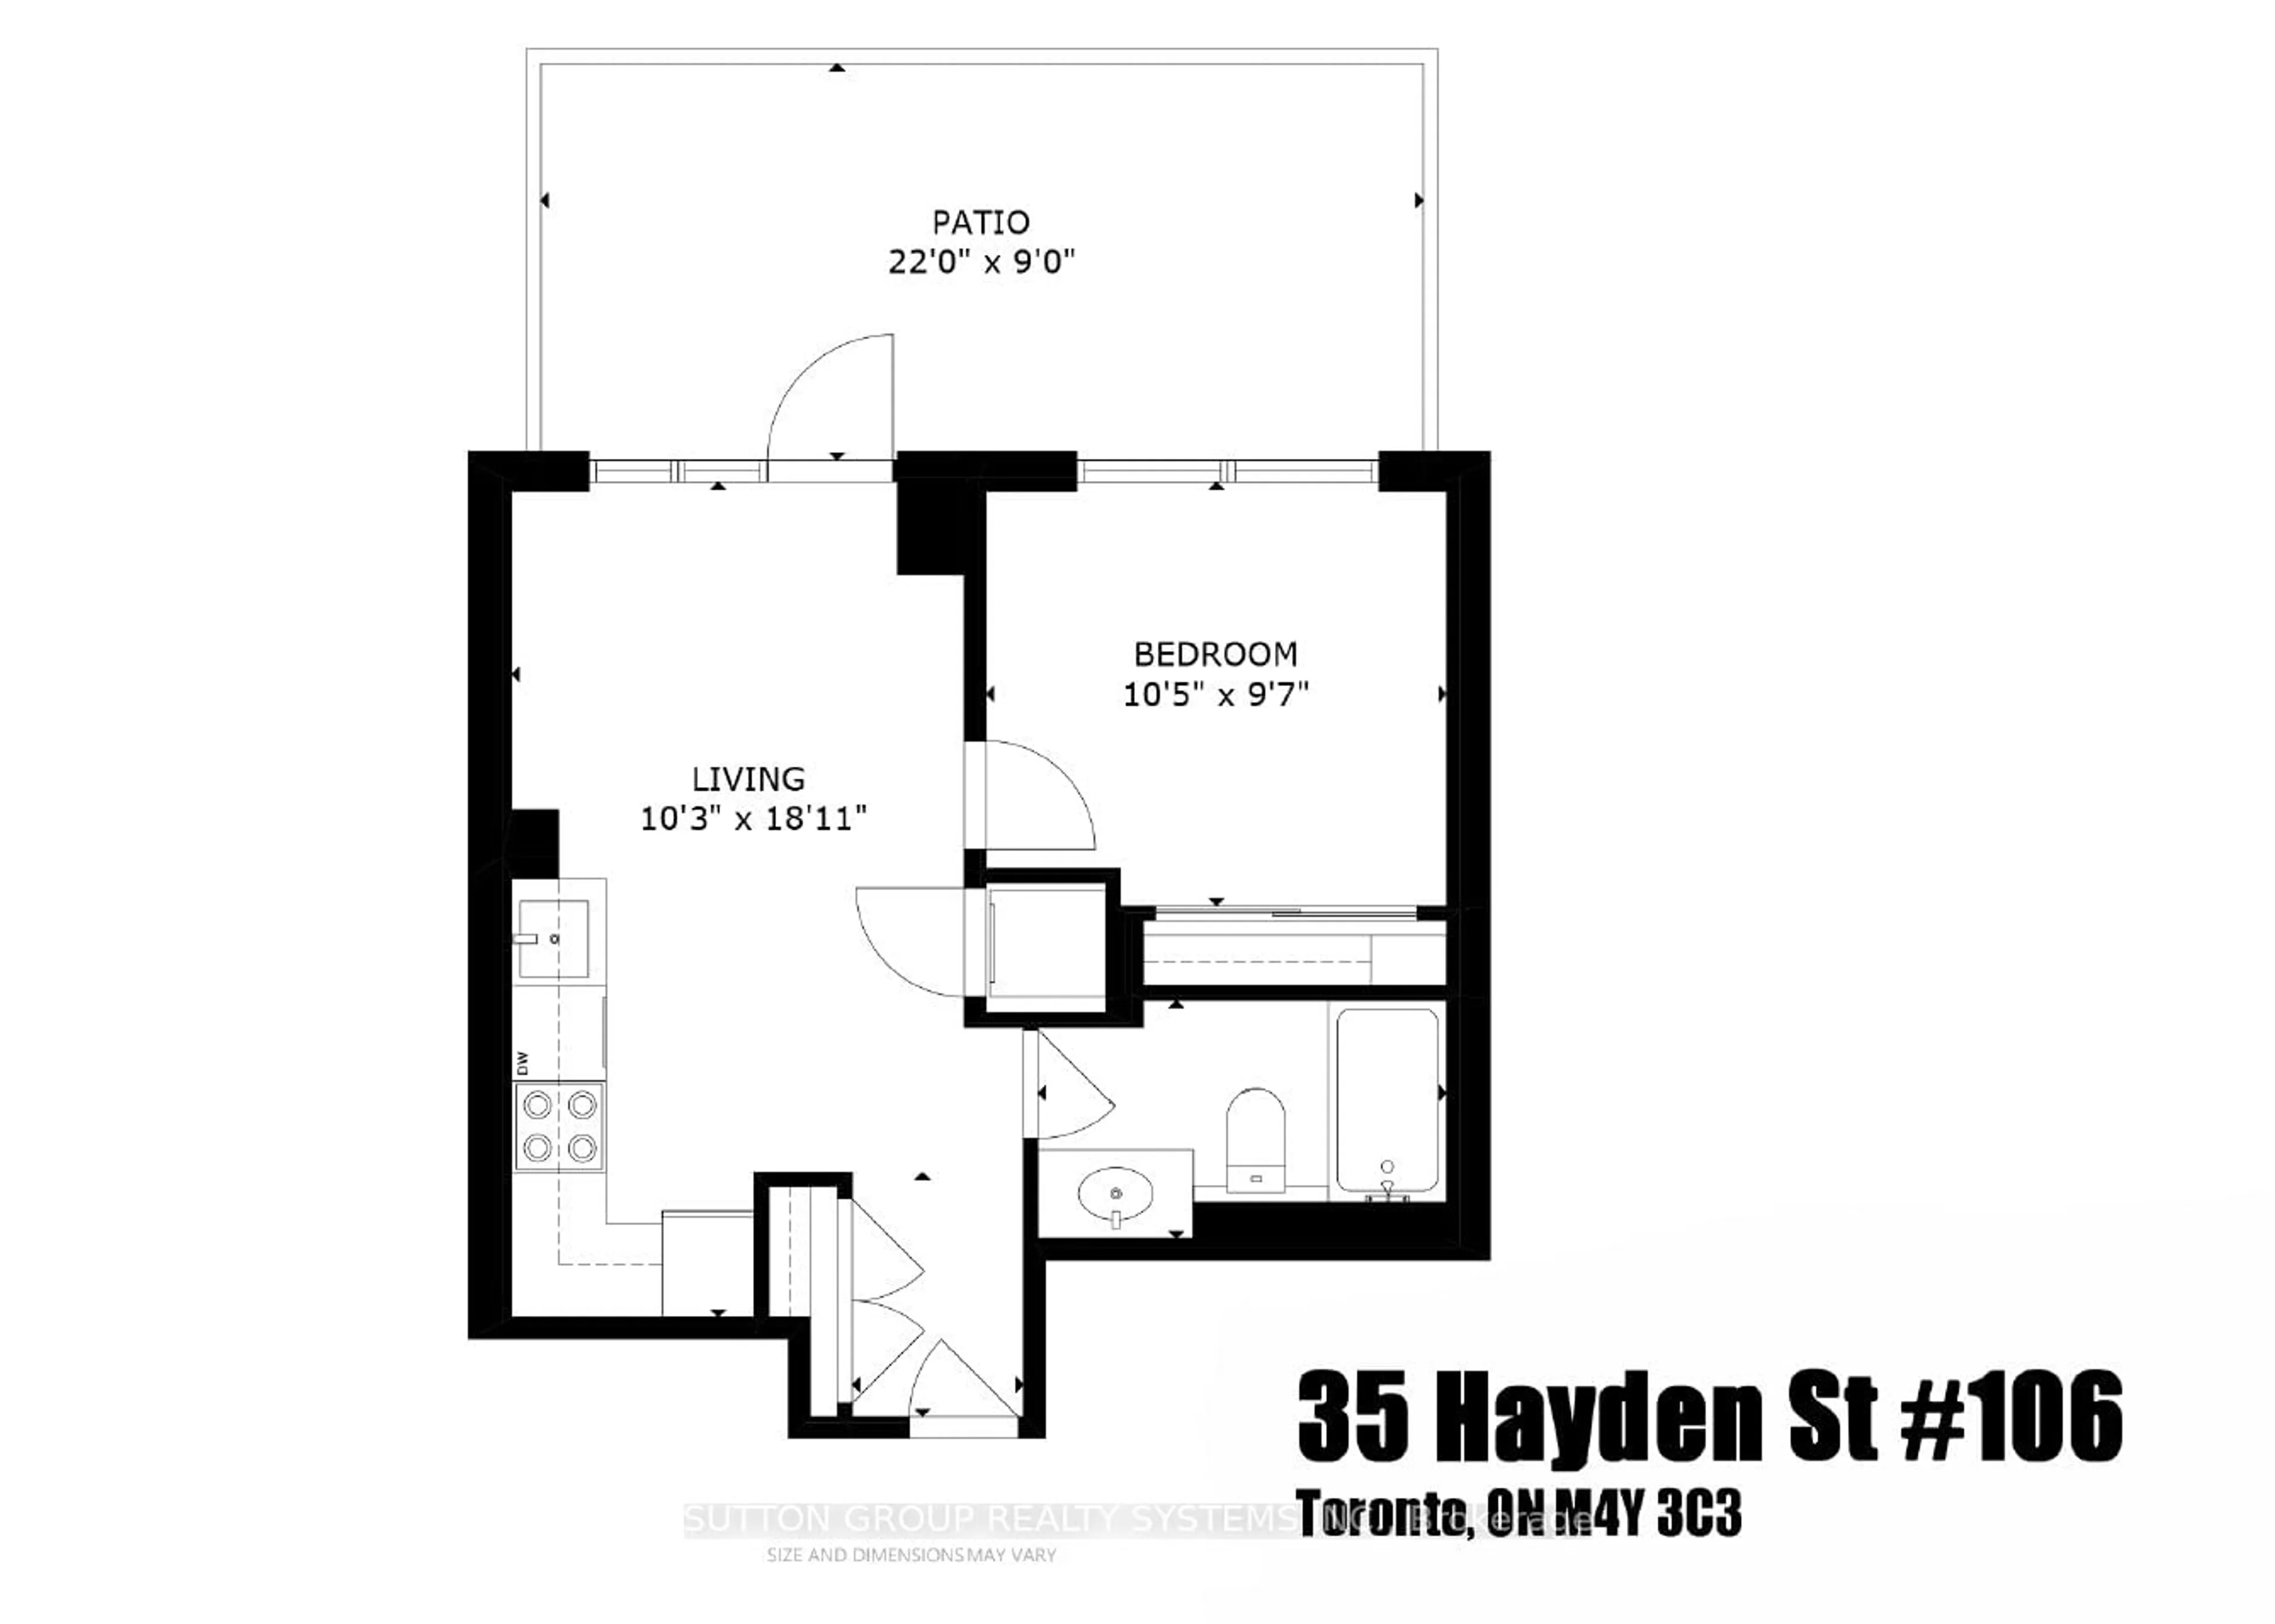 Floor plan for 35 Hayden St #106, Toronto Ontario M4Y 3C3